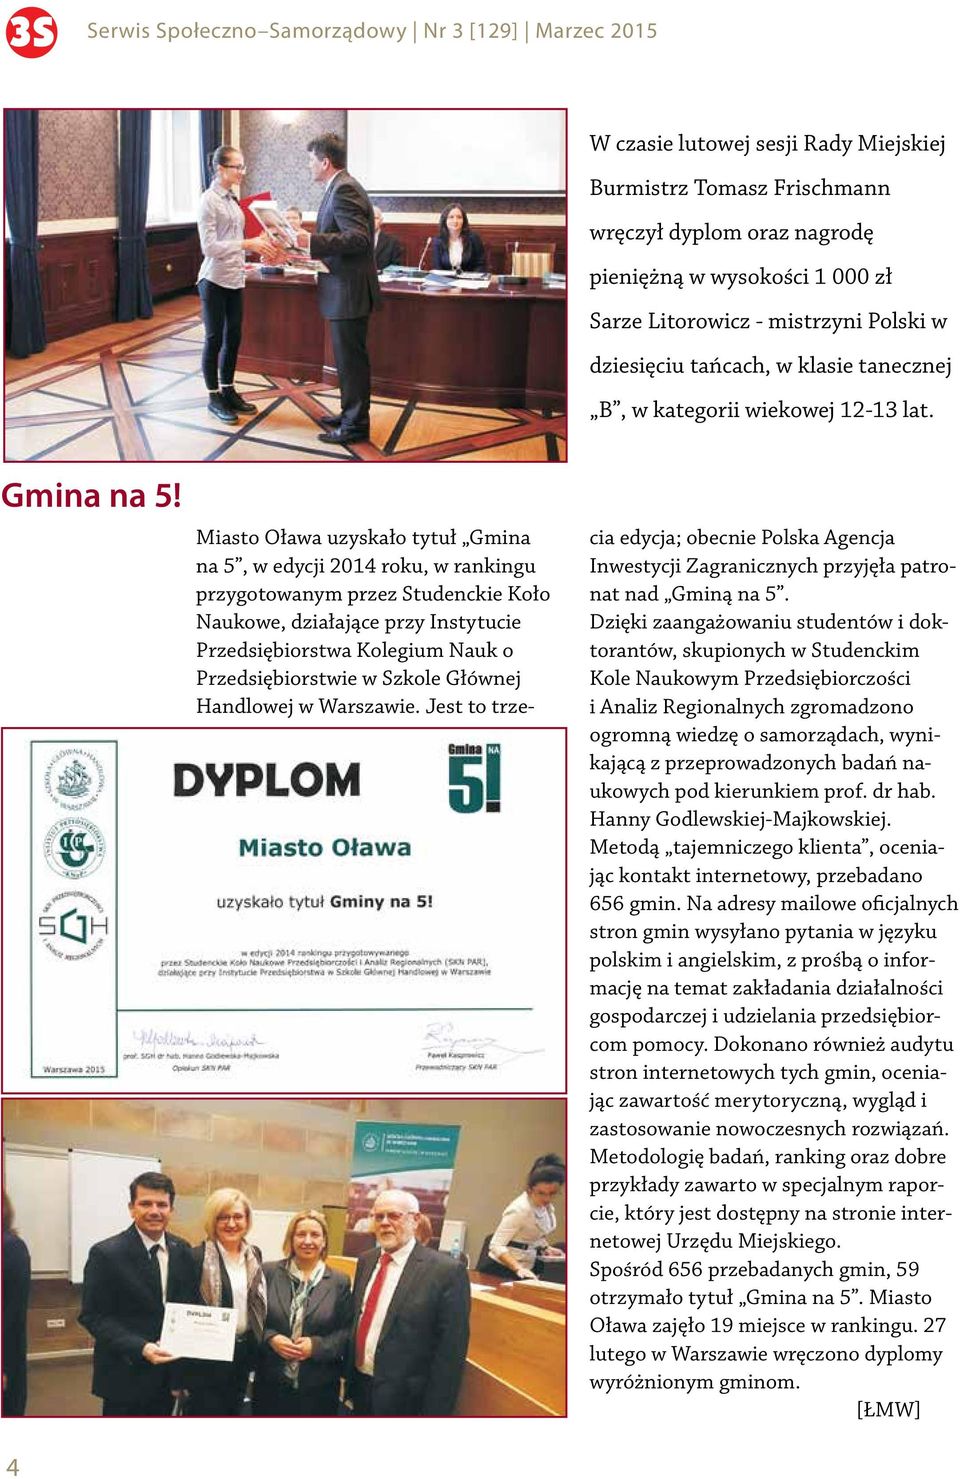 4 Miasto Oława uzyskało tytuł Gmina na 5, w edycji 2014 roku, w rankingu przygotowanym przez Studenckie Koło Naukowe, działające przy Instytucie Przedsiębiorstwa Kolegium Nauk o Przedsiębiorstwie w